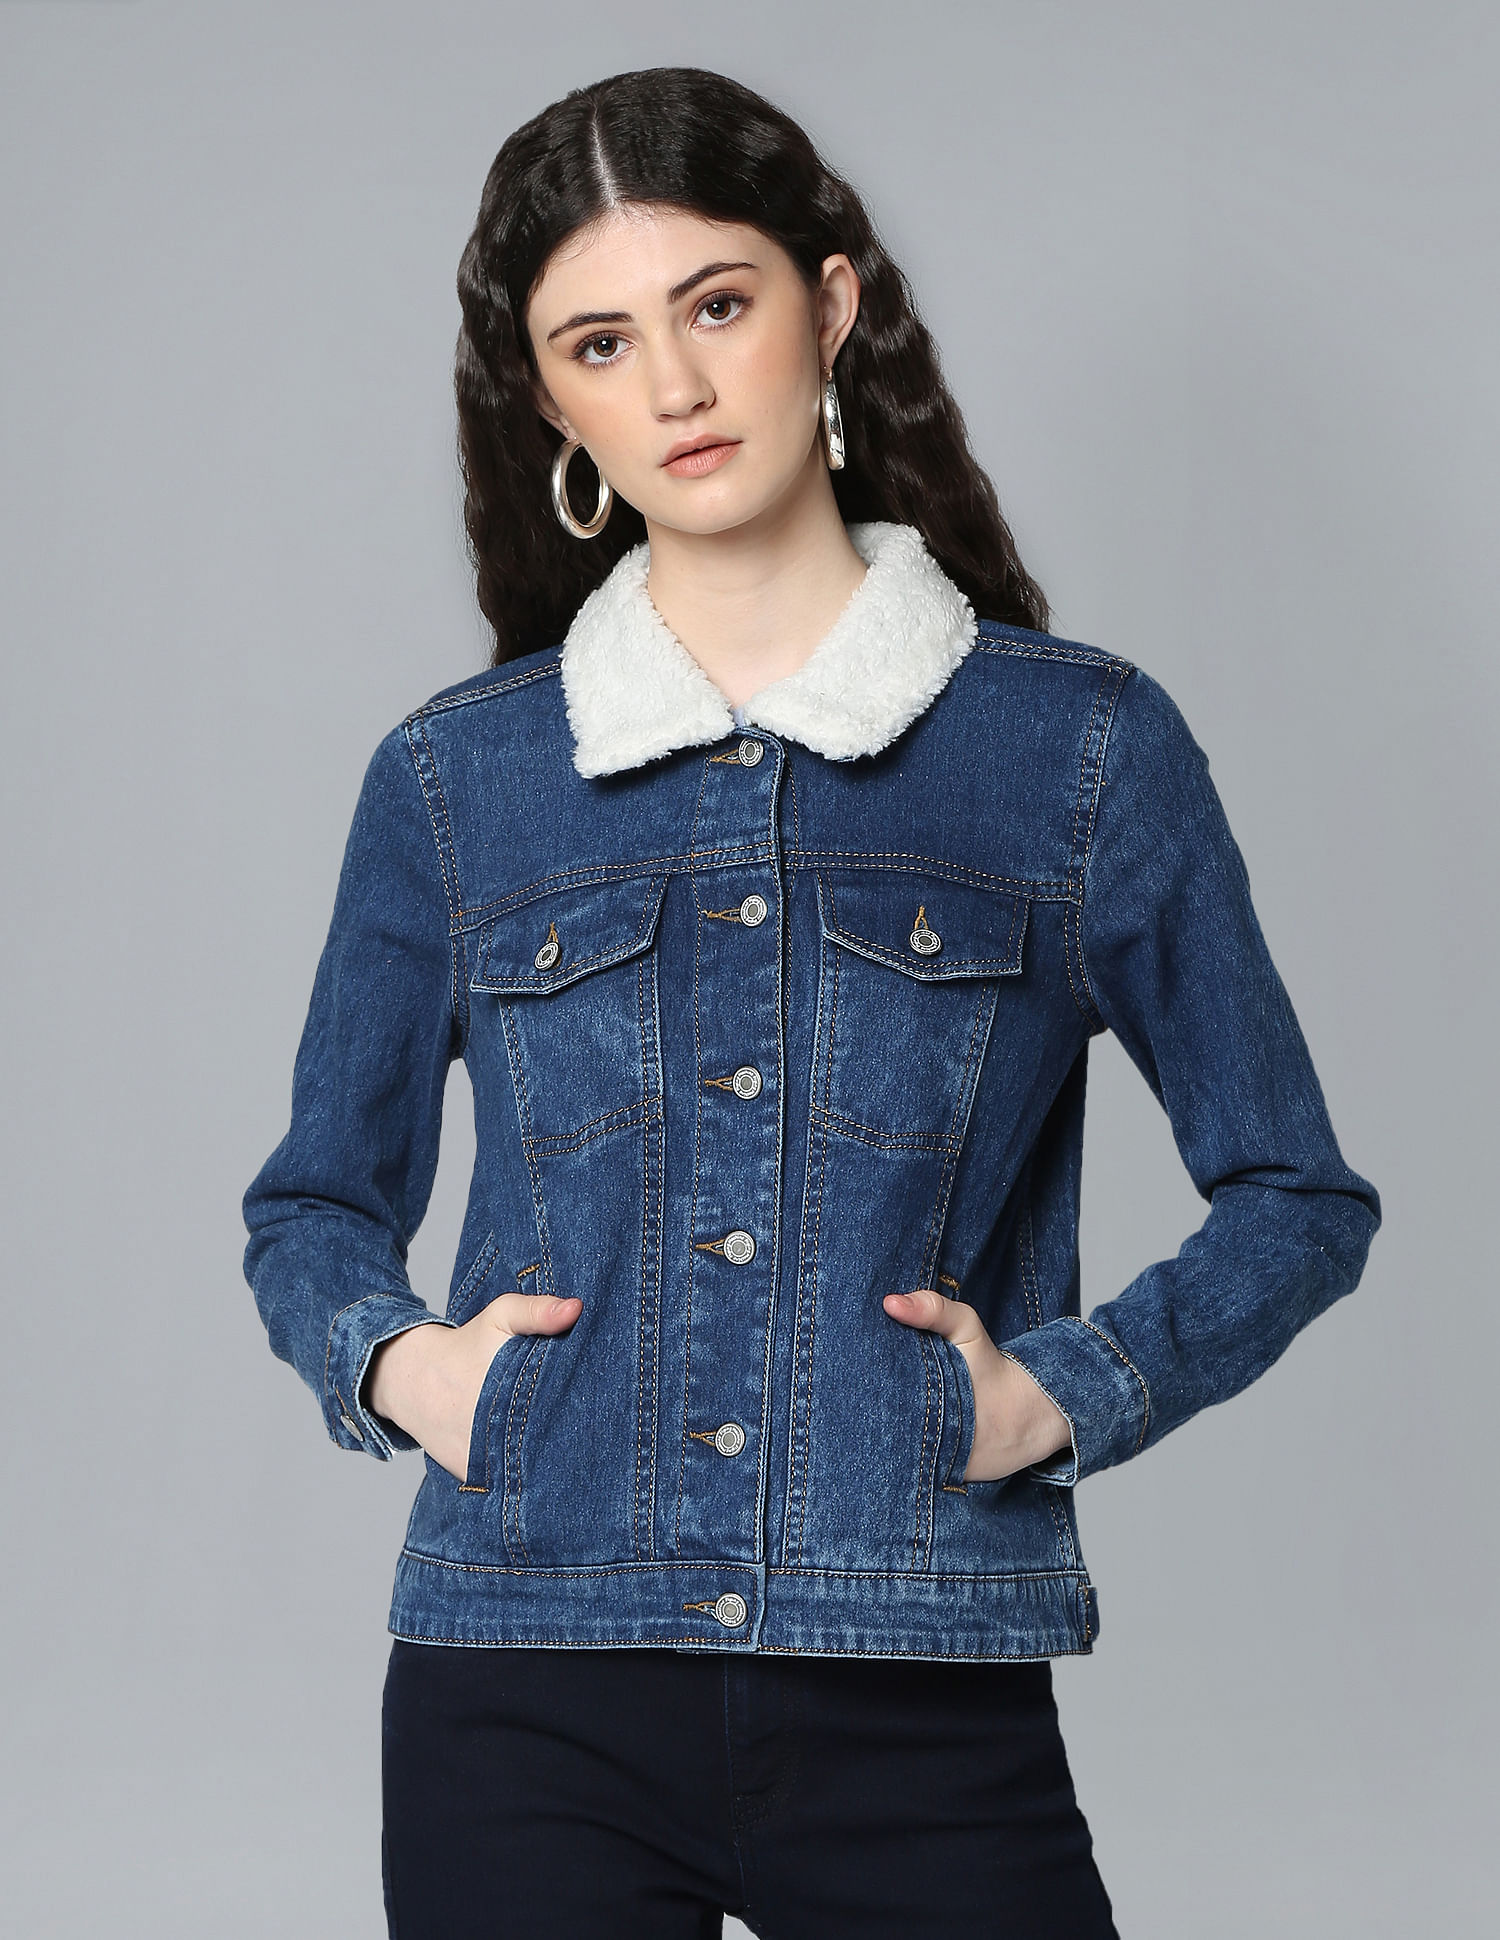 Winter Fashion Womens Denim Faux Fur Lined Warm Coats Jean Jacket Girls  Outwear | eBay